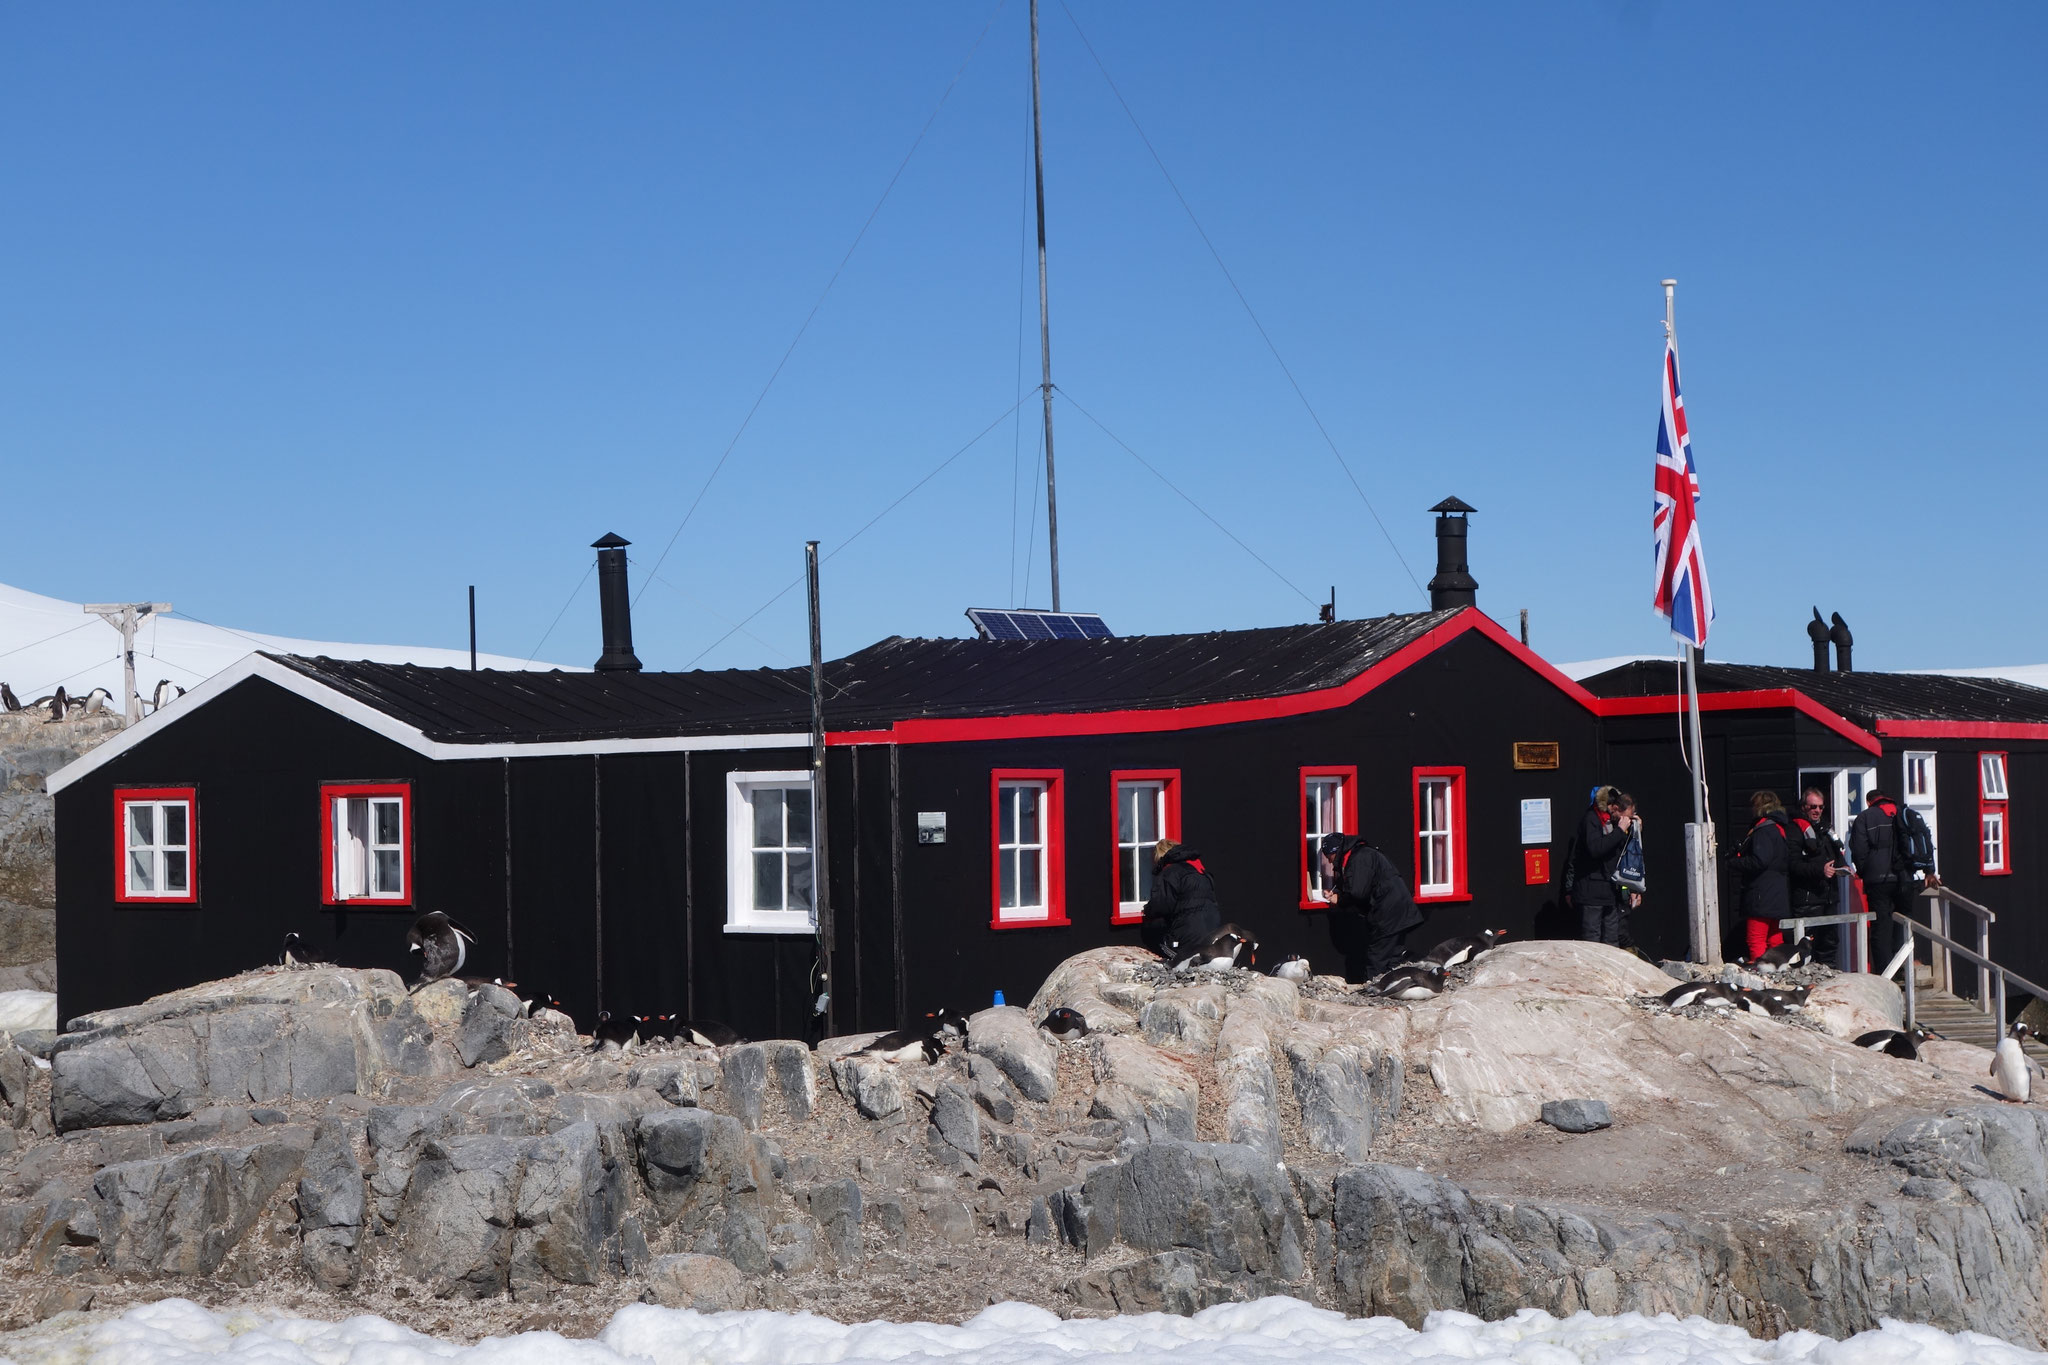 Südlichstes Postamt der Welt, Wiencke Island, Port Lockroy, 64°49' S, 63°31' W  